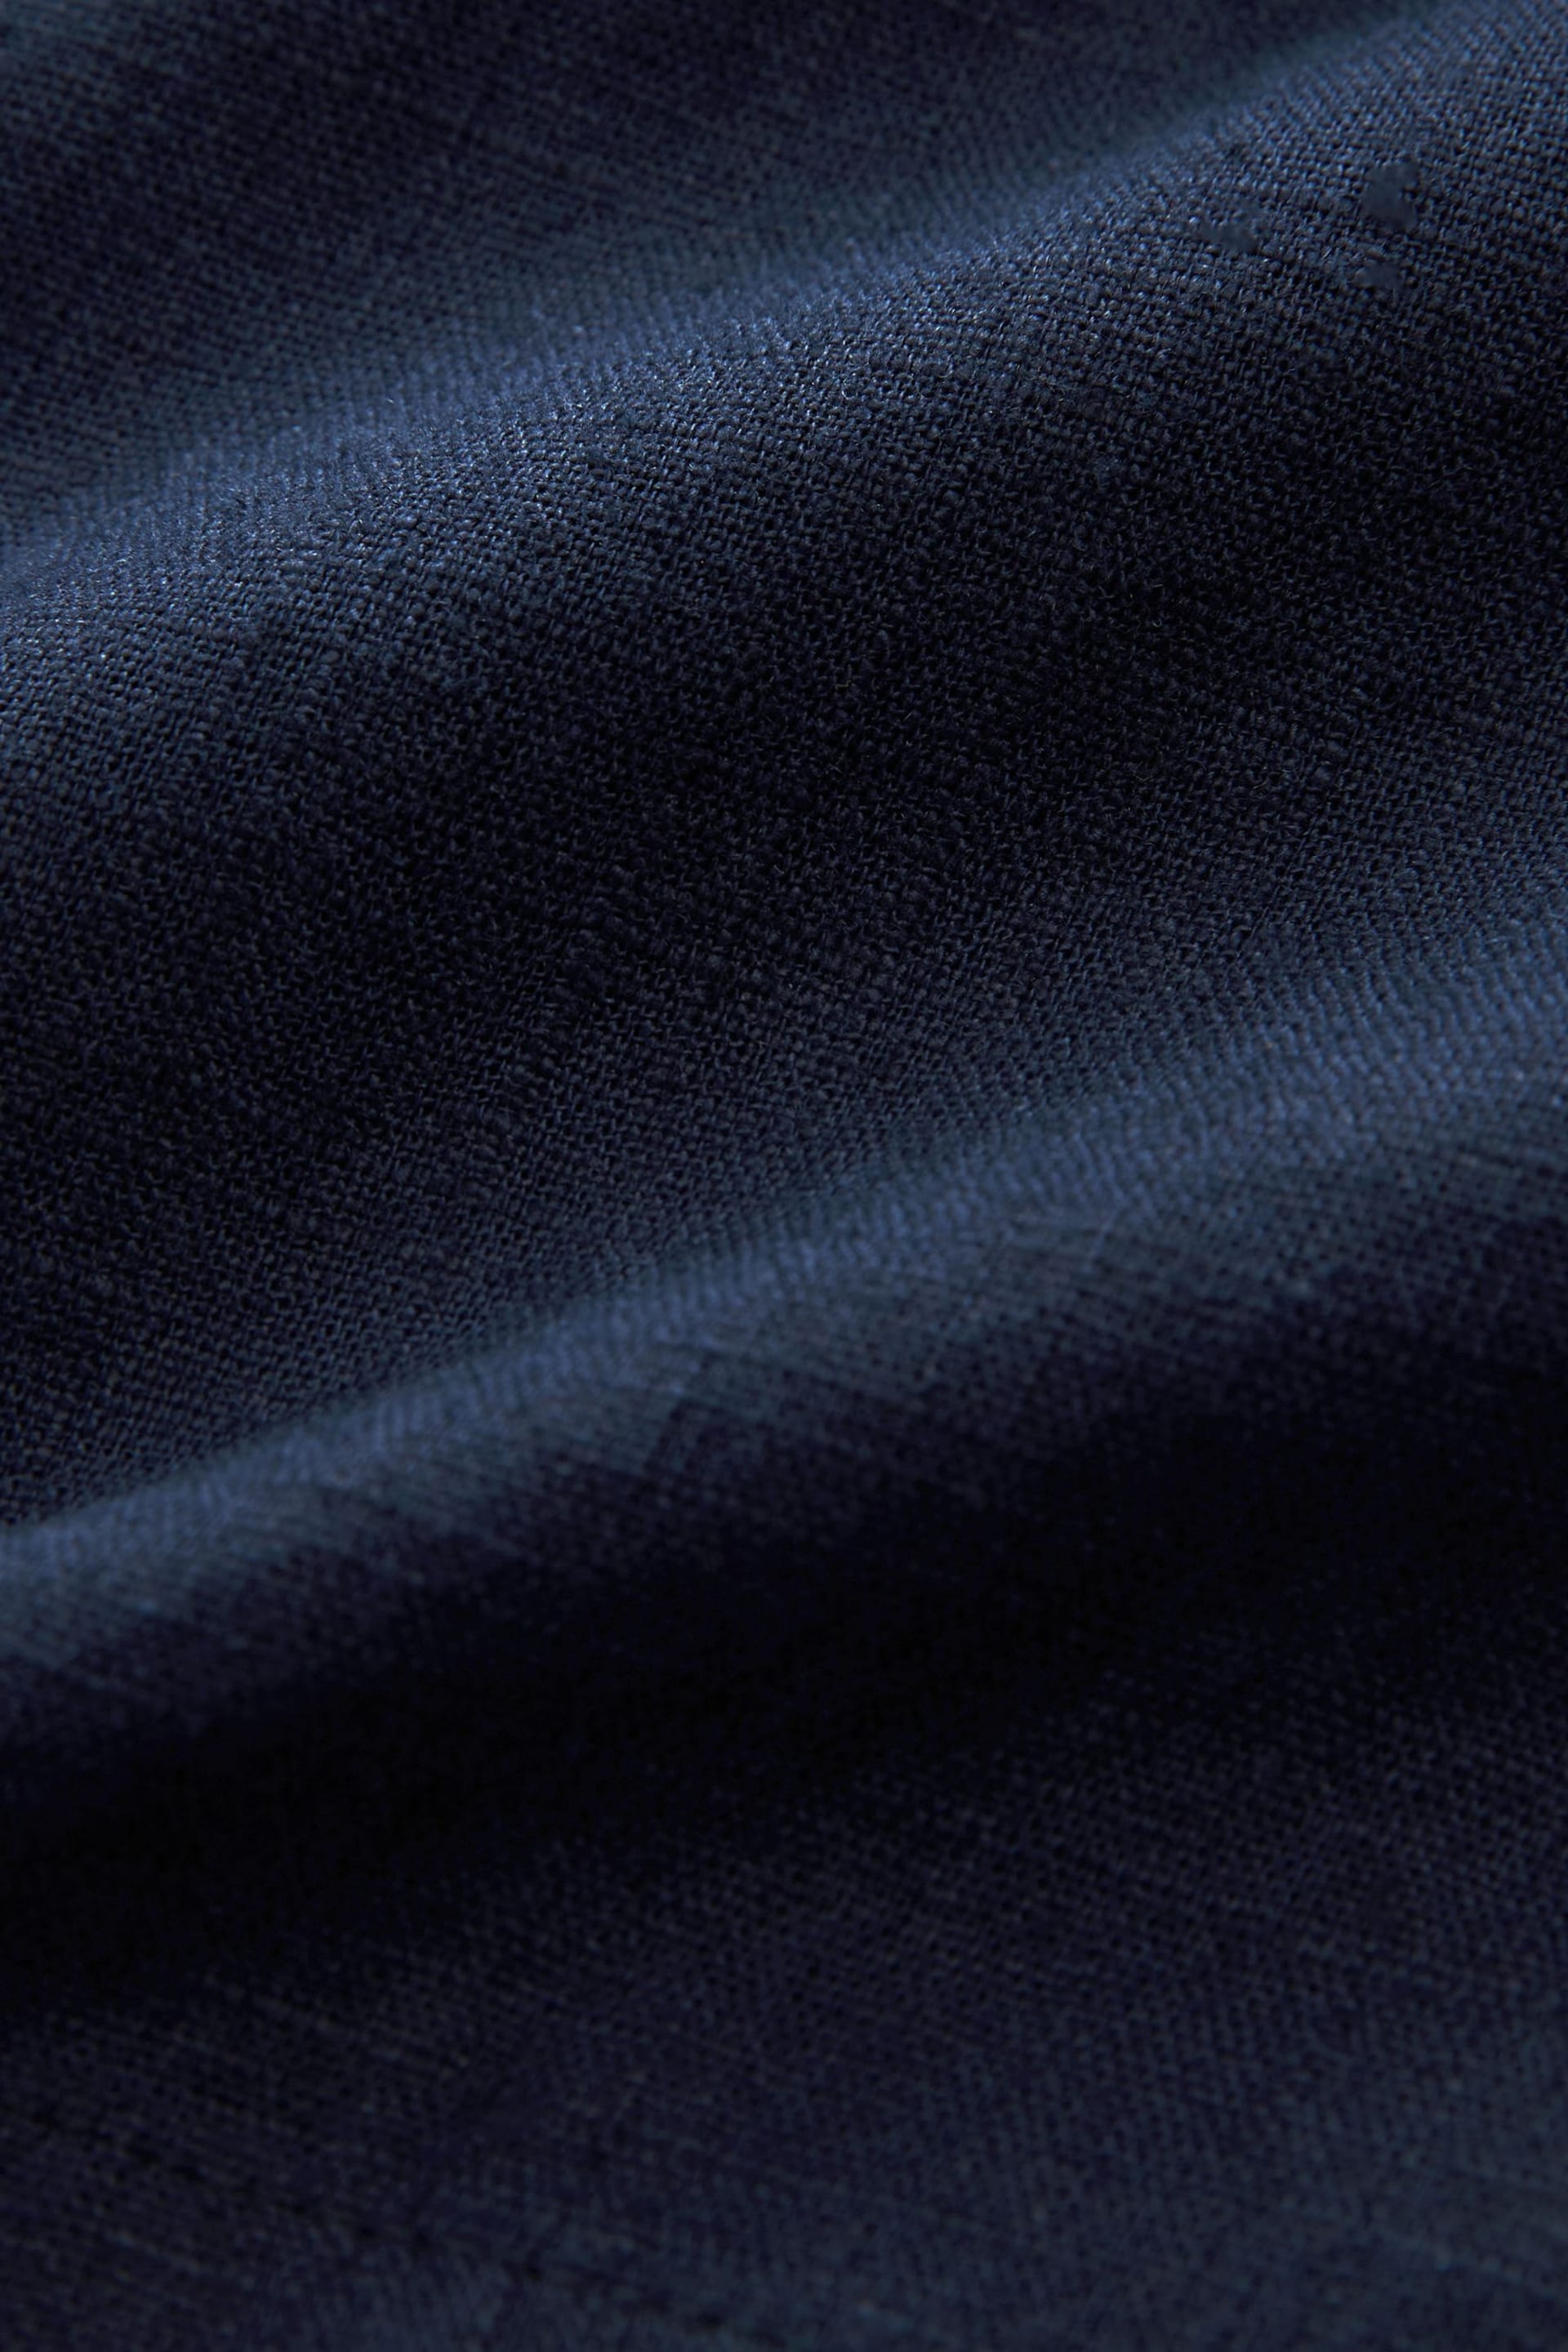 Black/Navy Blue Linen Blend Boy Shorts 2 Pack - Image 4 of 8